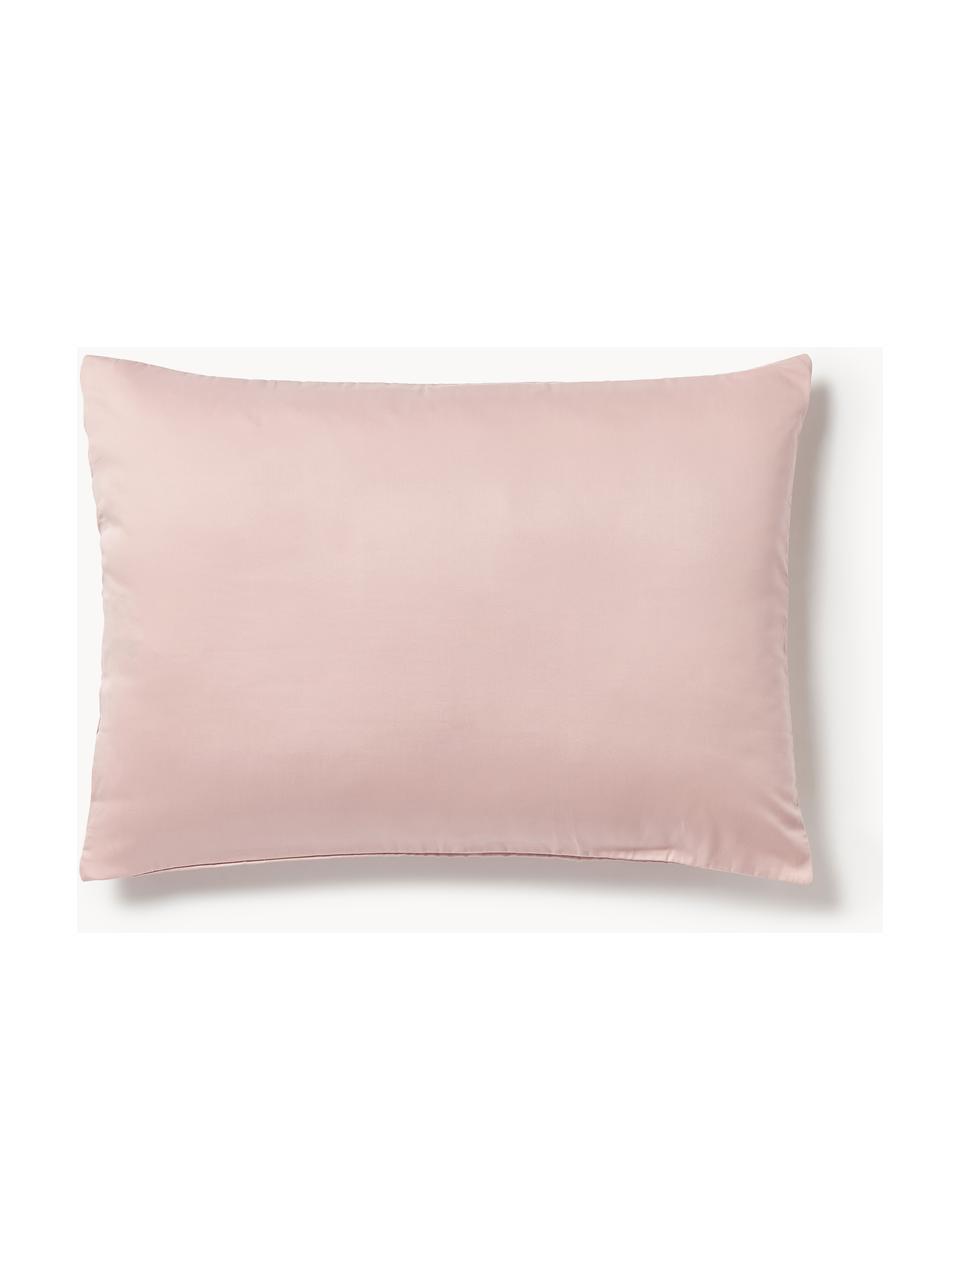 Funda de almohada de satén Comfort, Rosa oscuro, An 45 x L 110 cm